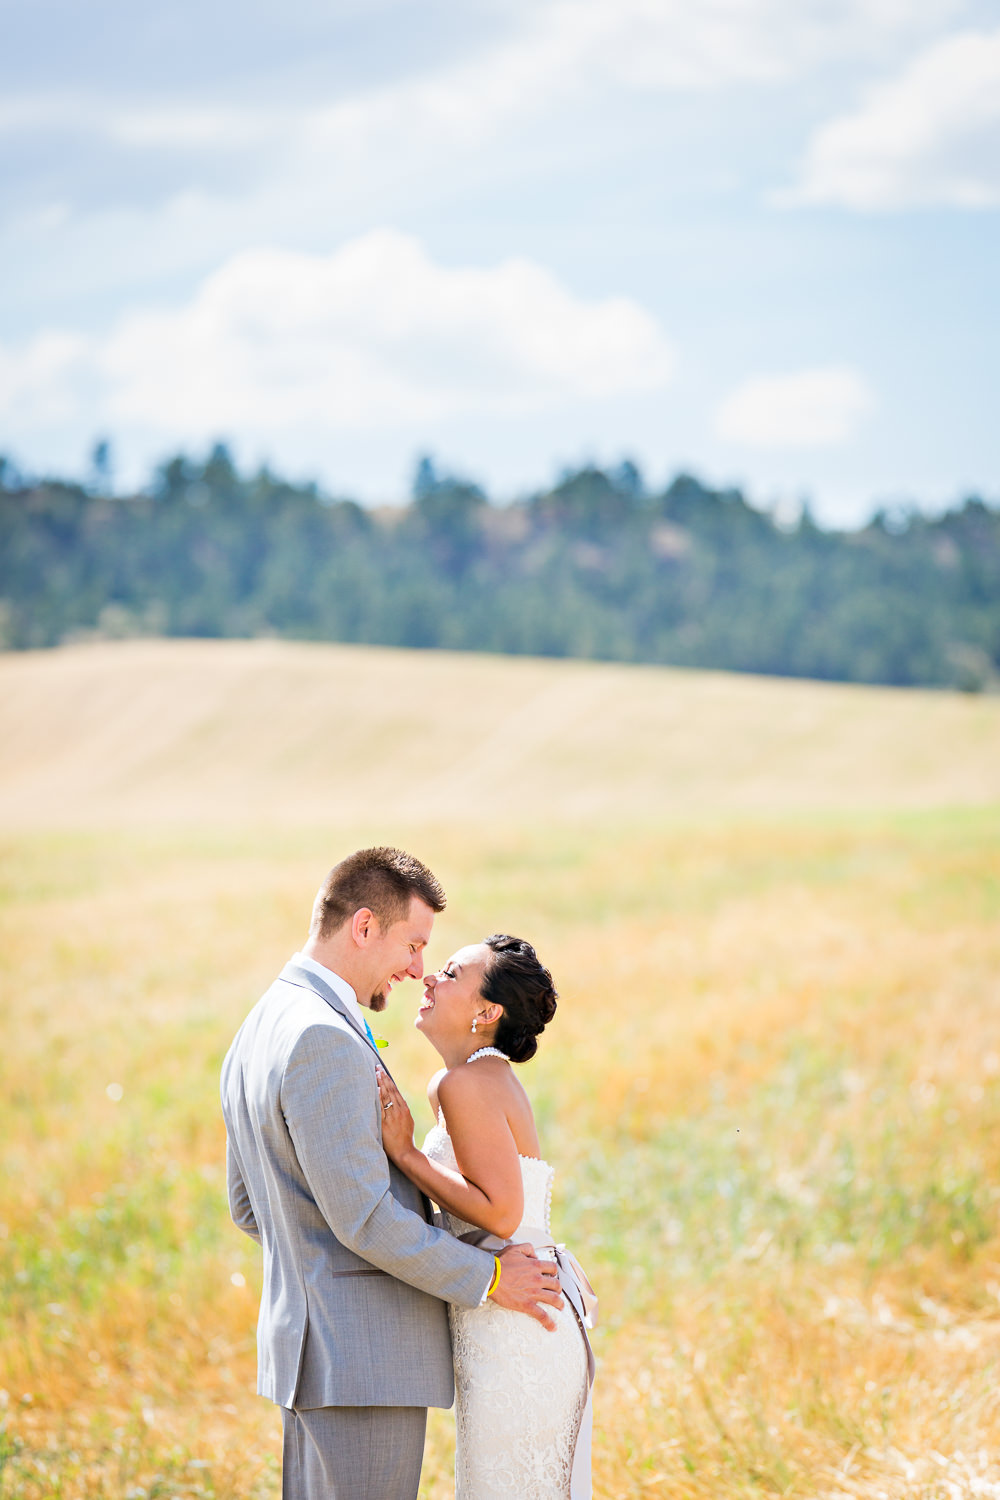 billings-montana-chanceys-wedding-first-look-bride-groom-hug.jpg